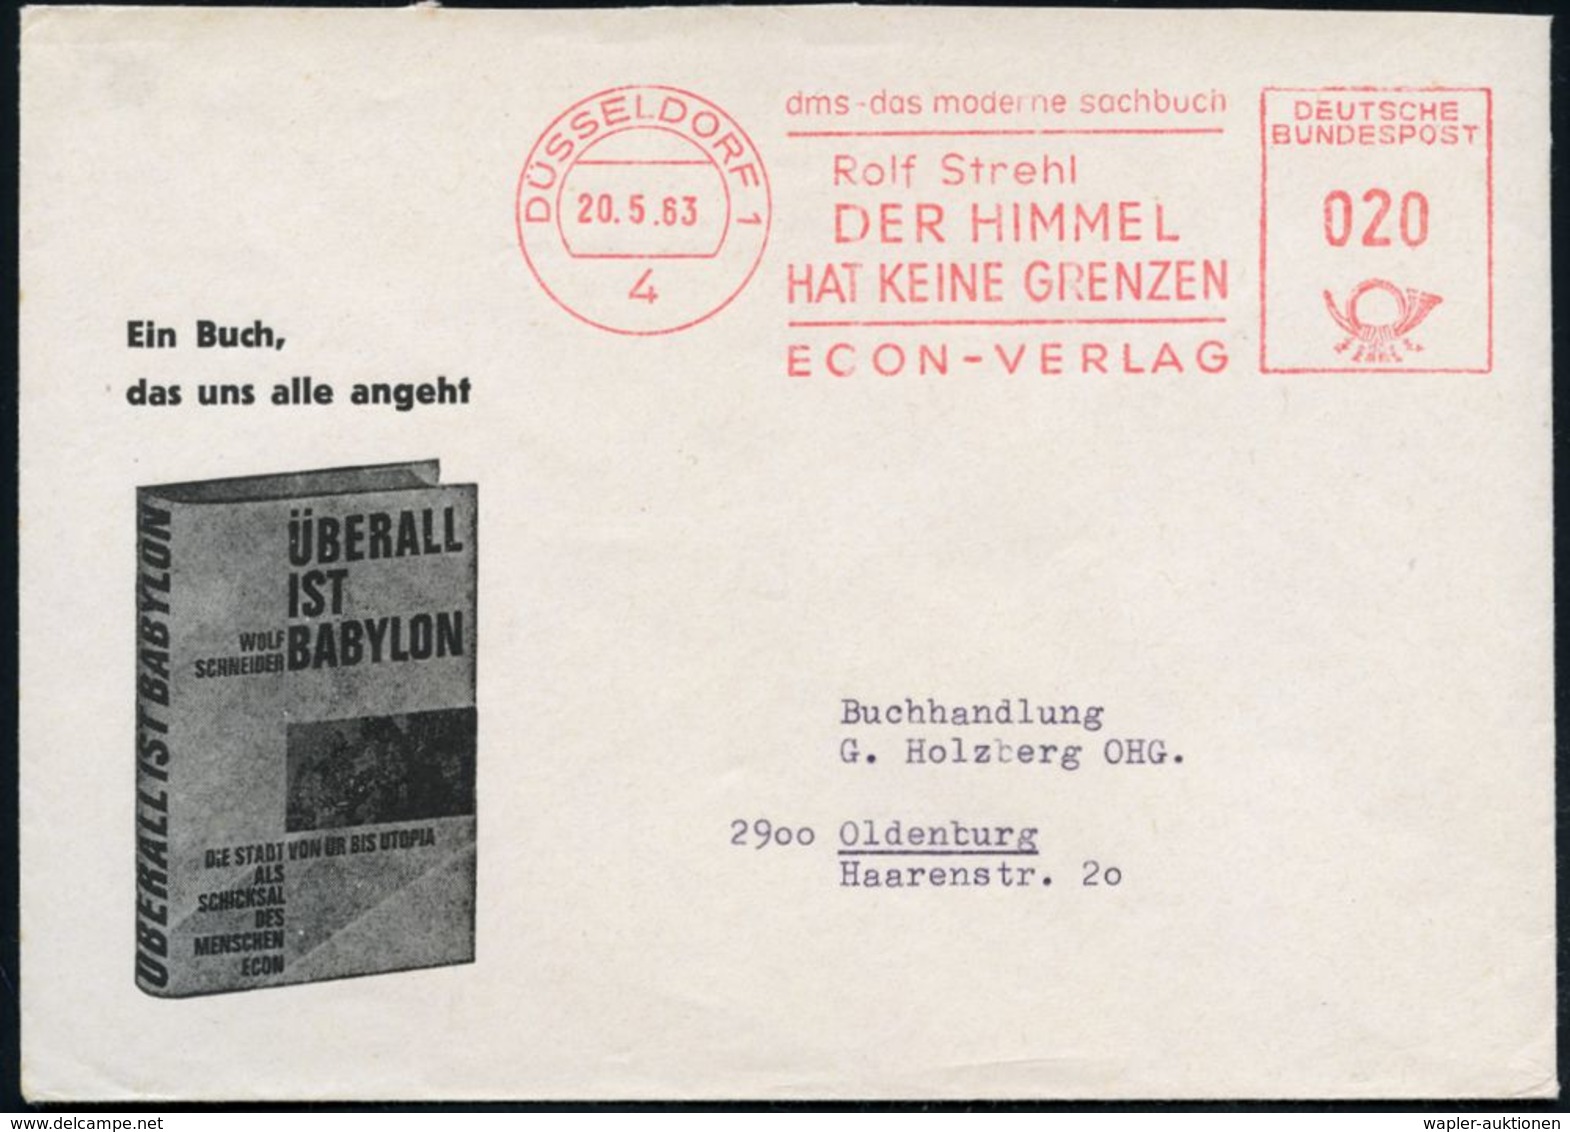 4 DÜSSELDORF 1/ ..Rolf Strehl/ DER HIMMEL/ HAT KEINE GRENZEN/ ECON-VERLAG 1963 (20.5.) Seltener AFS Auf Verlags-Reklame- - Ecrivains